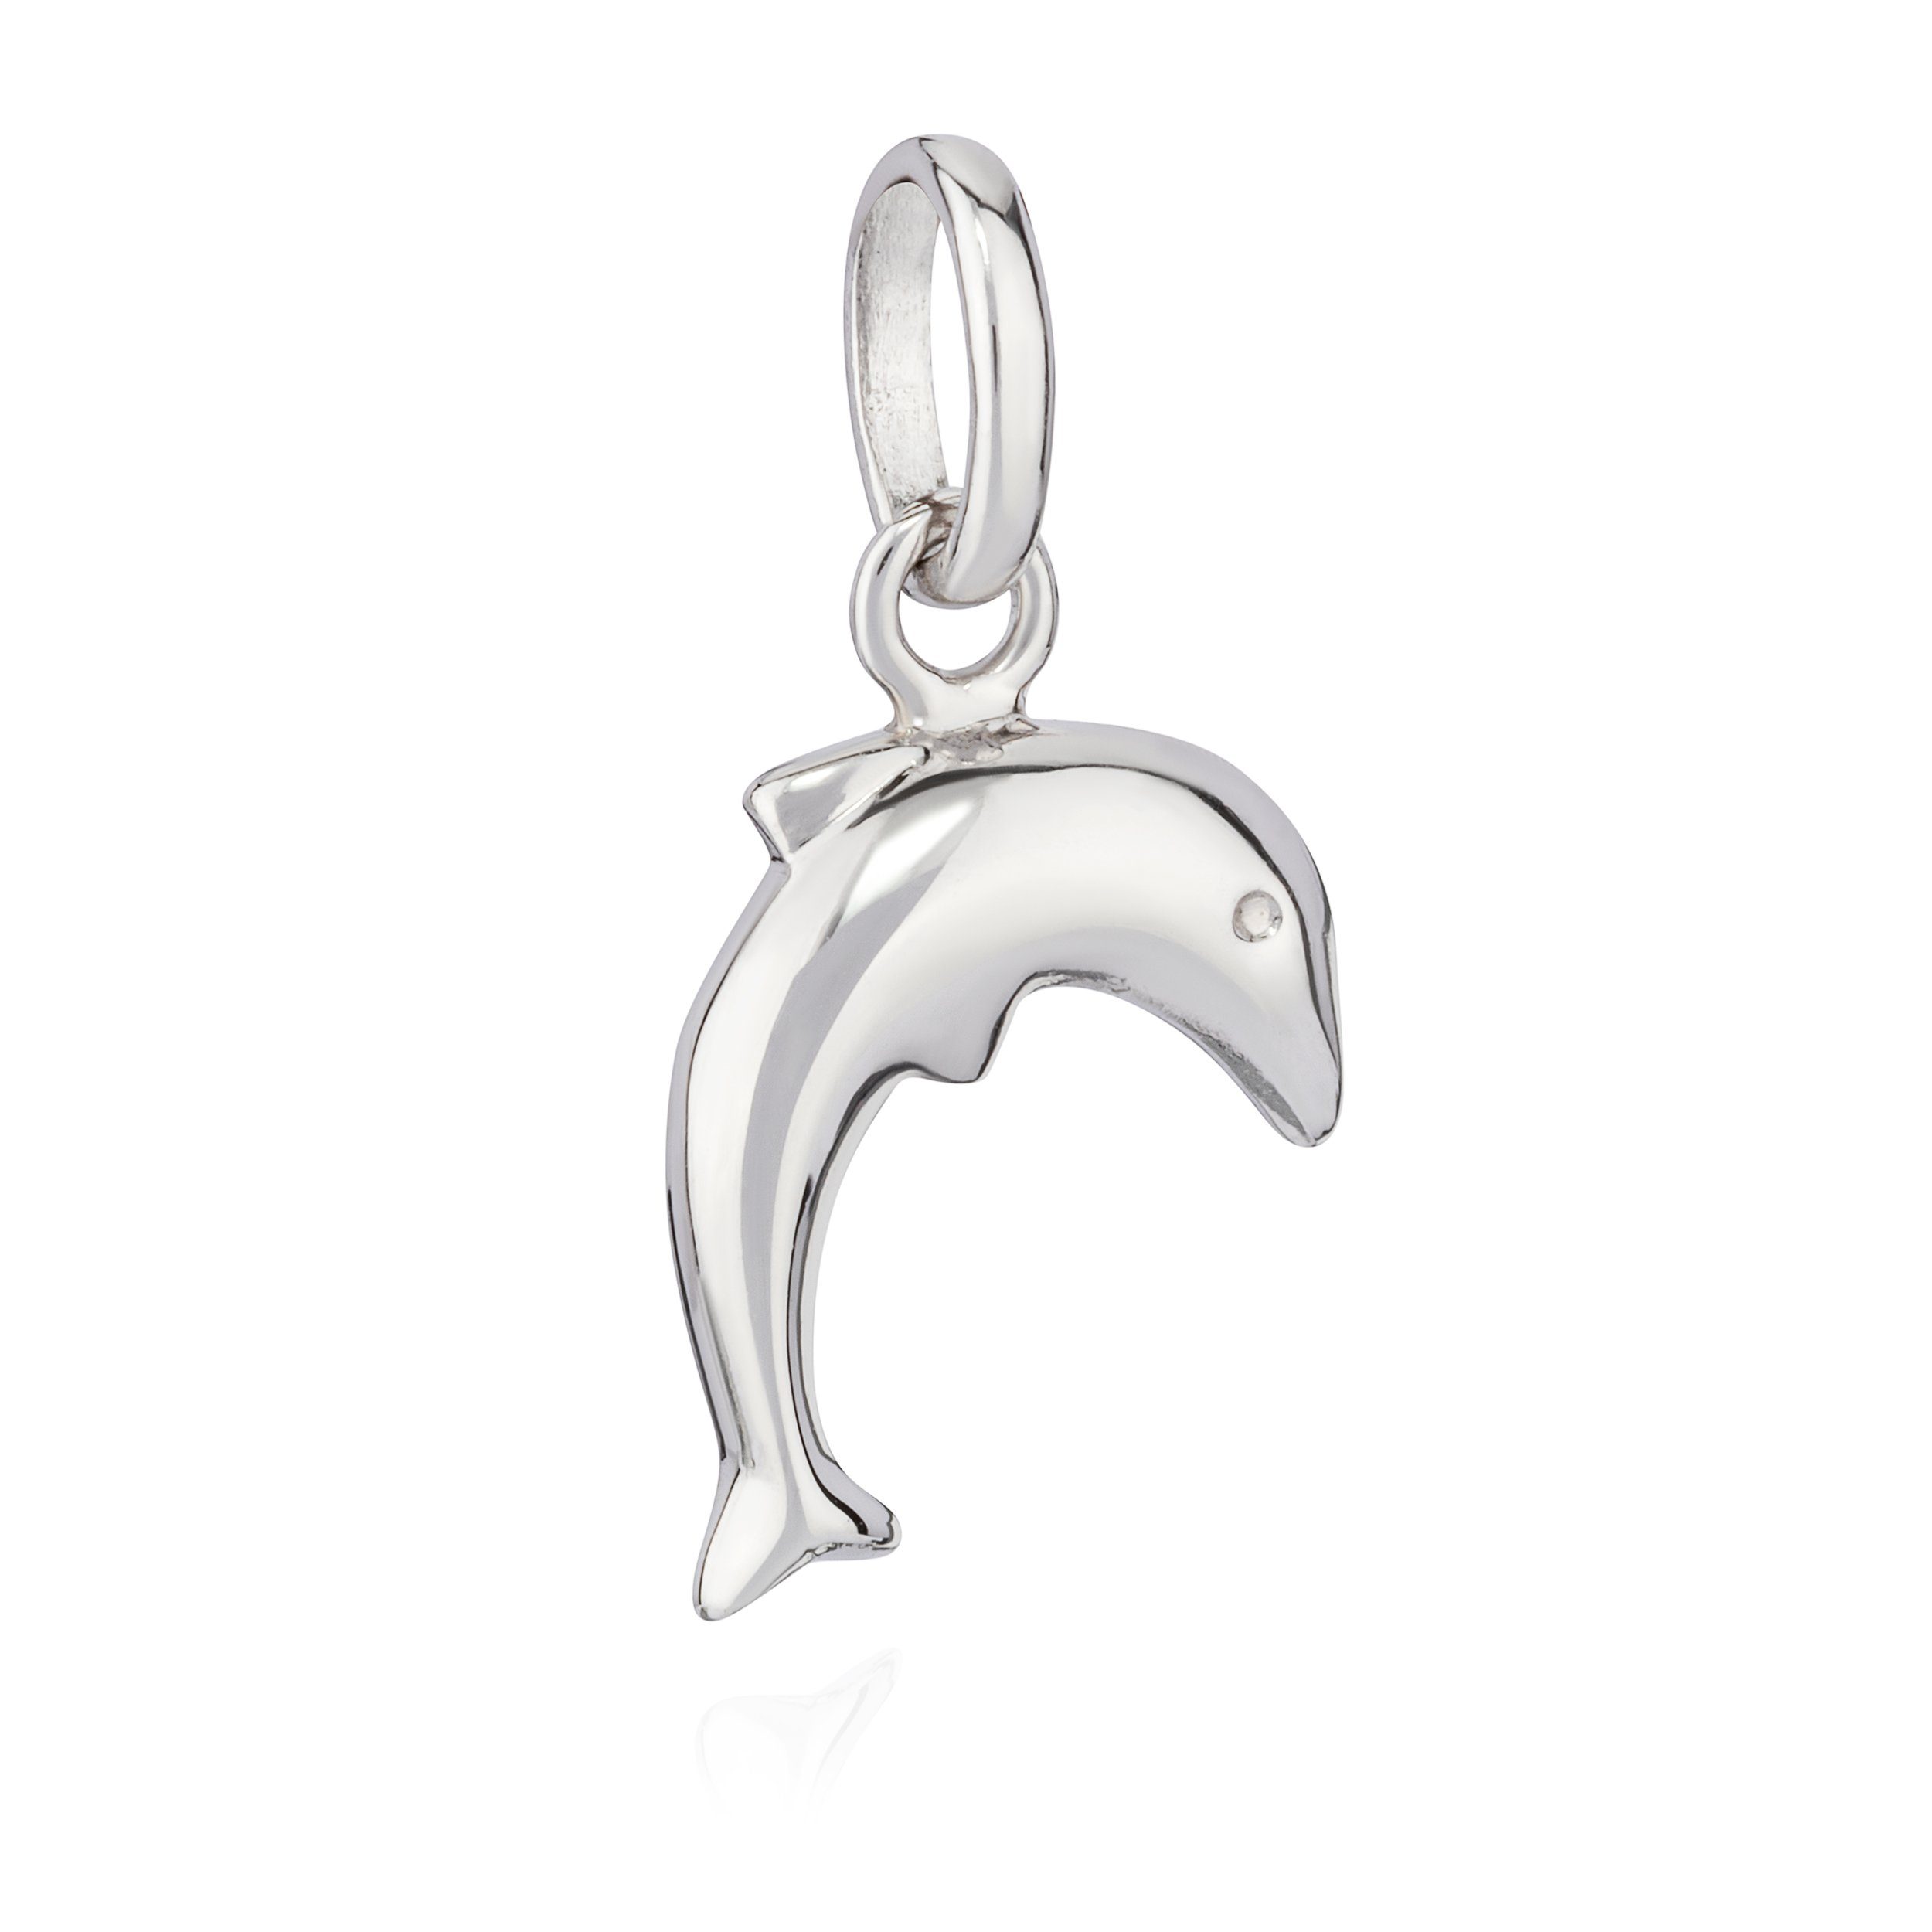 NKlaus anlaufgeschützt Silber Kettenanhänger Delfin 925 Kettenanhänger g